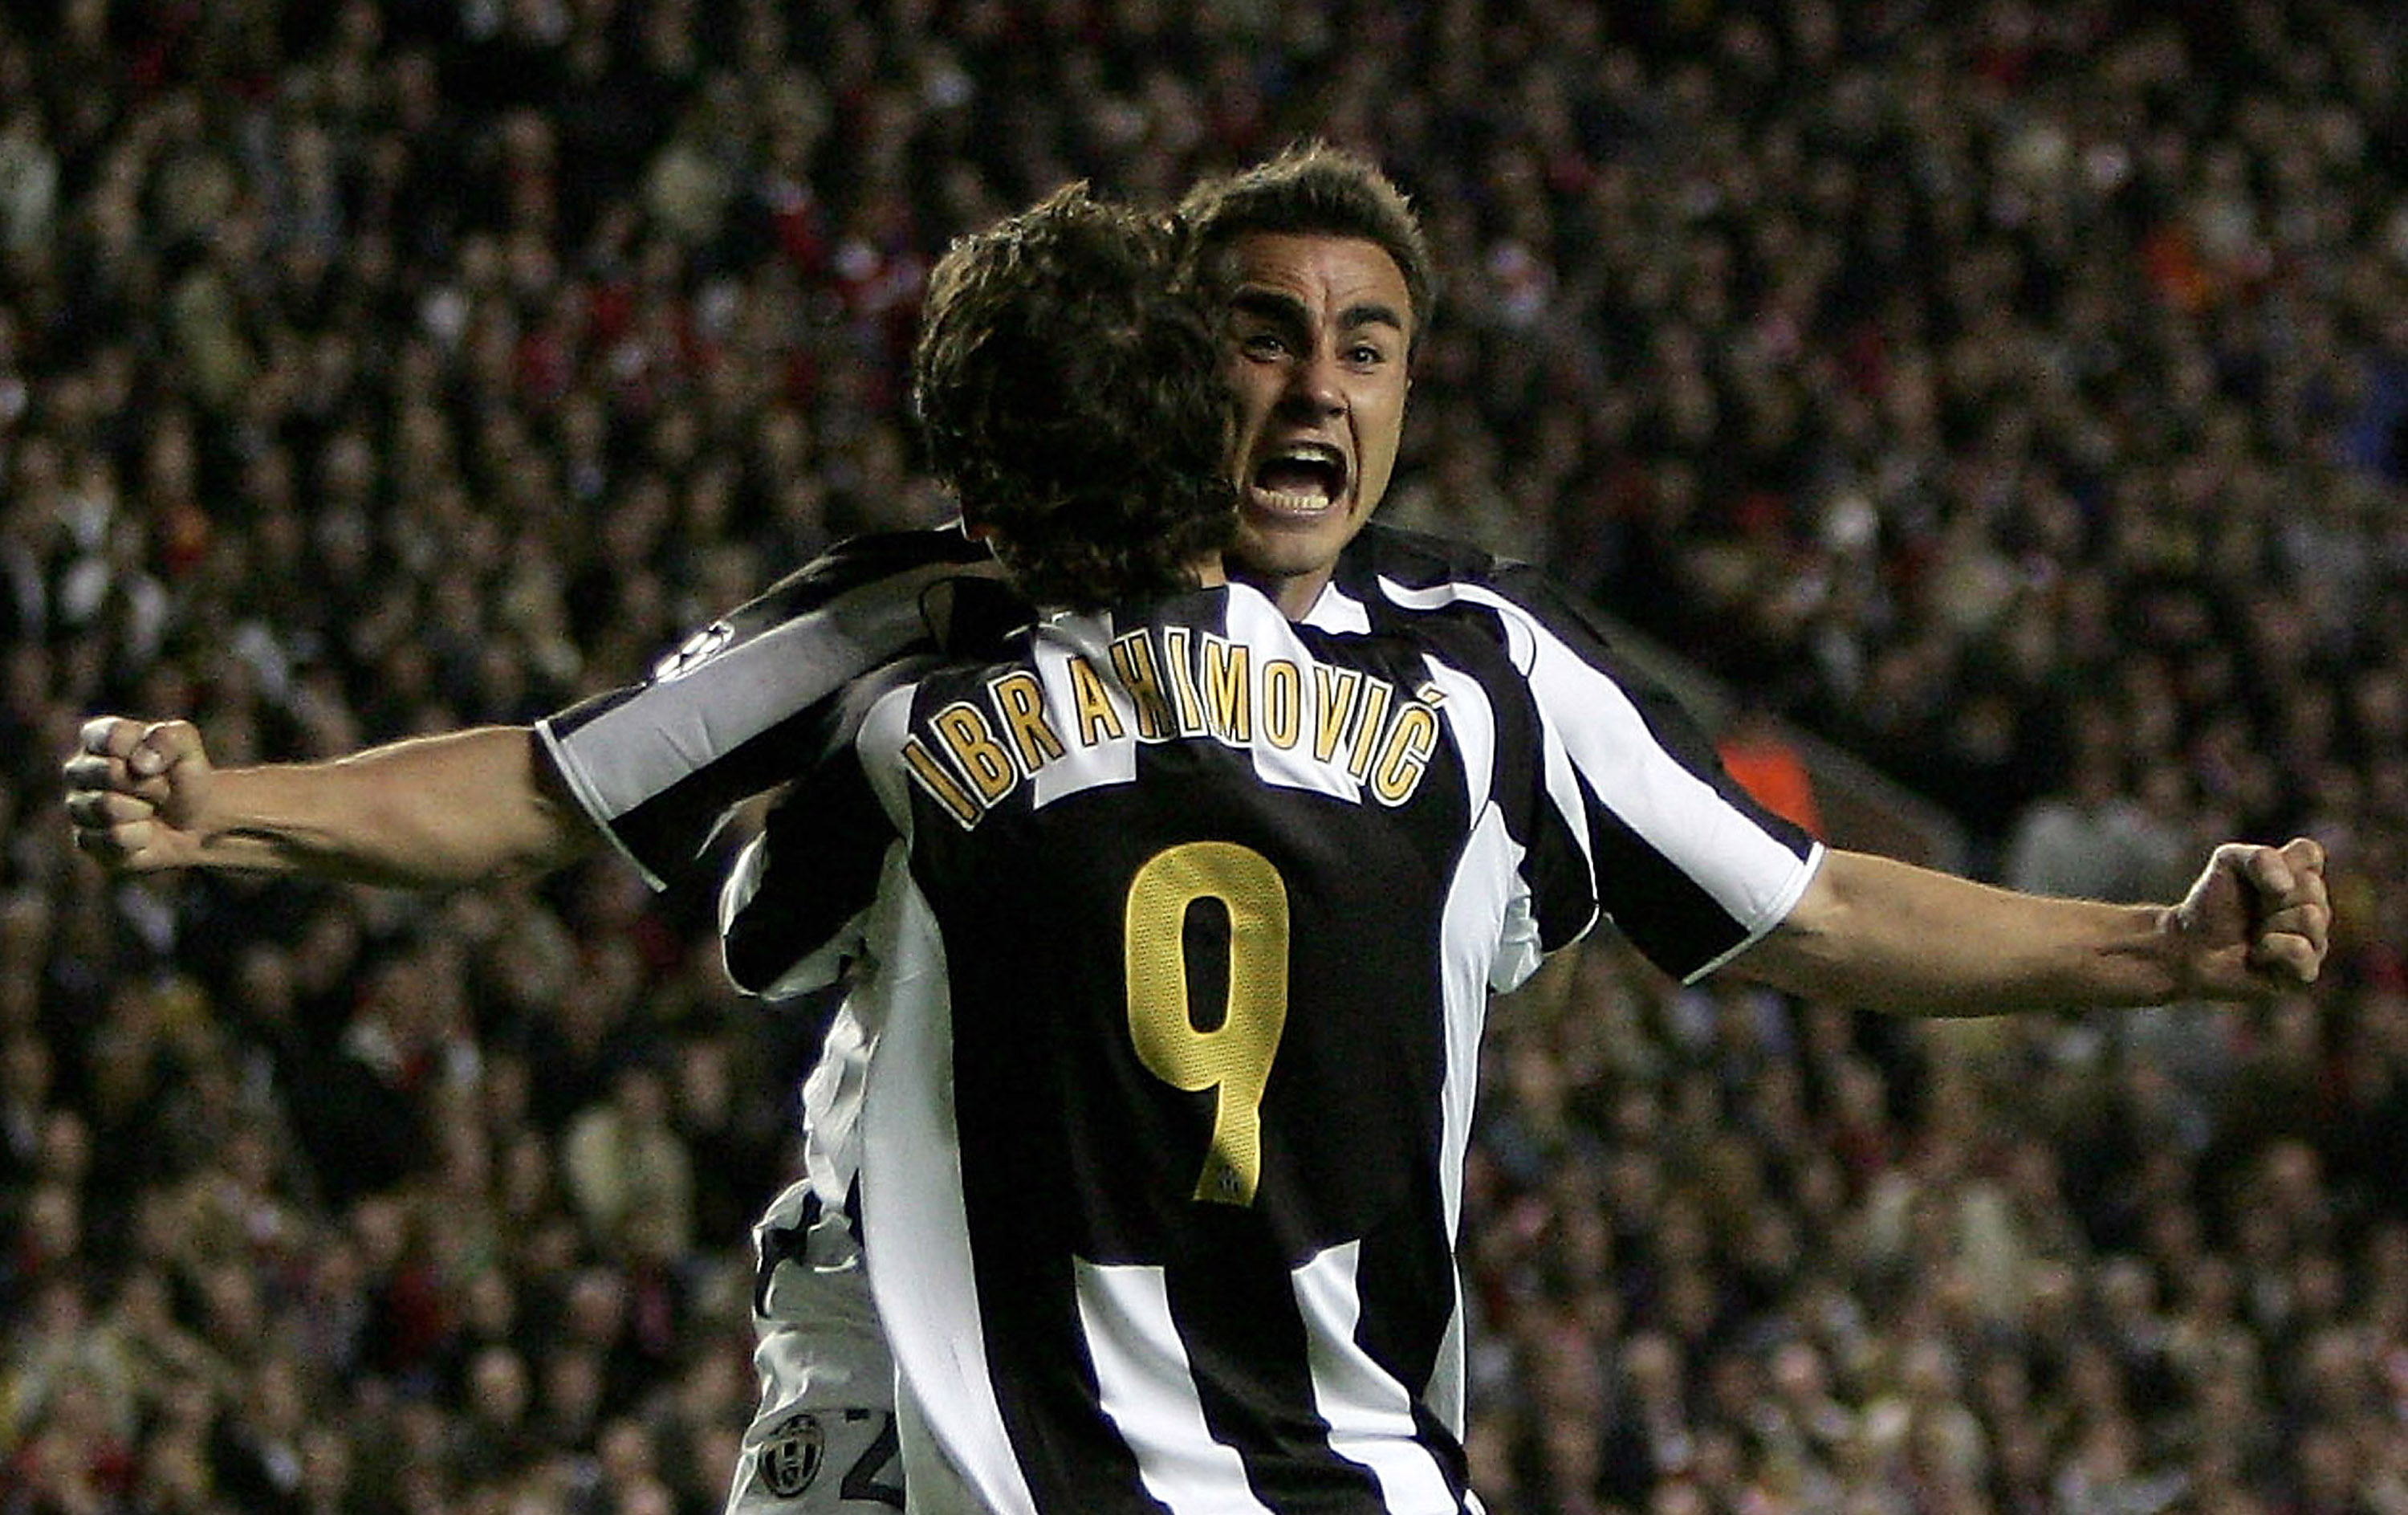 Det var i Juventus som Cannavaro fick sitt stora genombrott. 